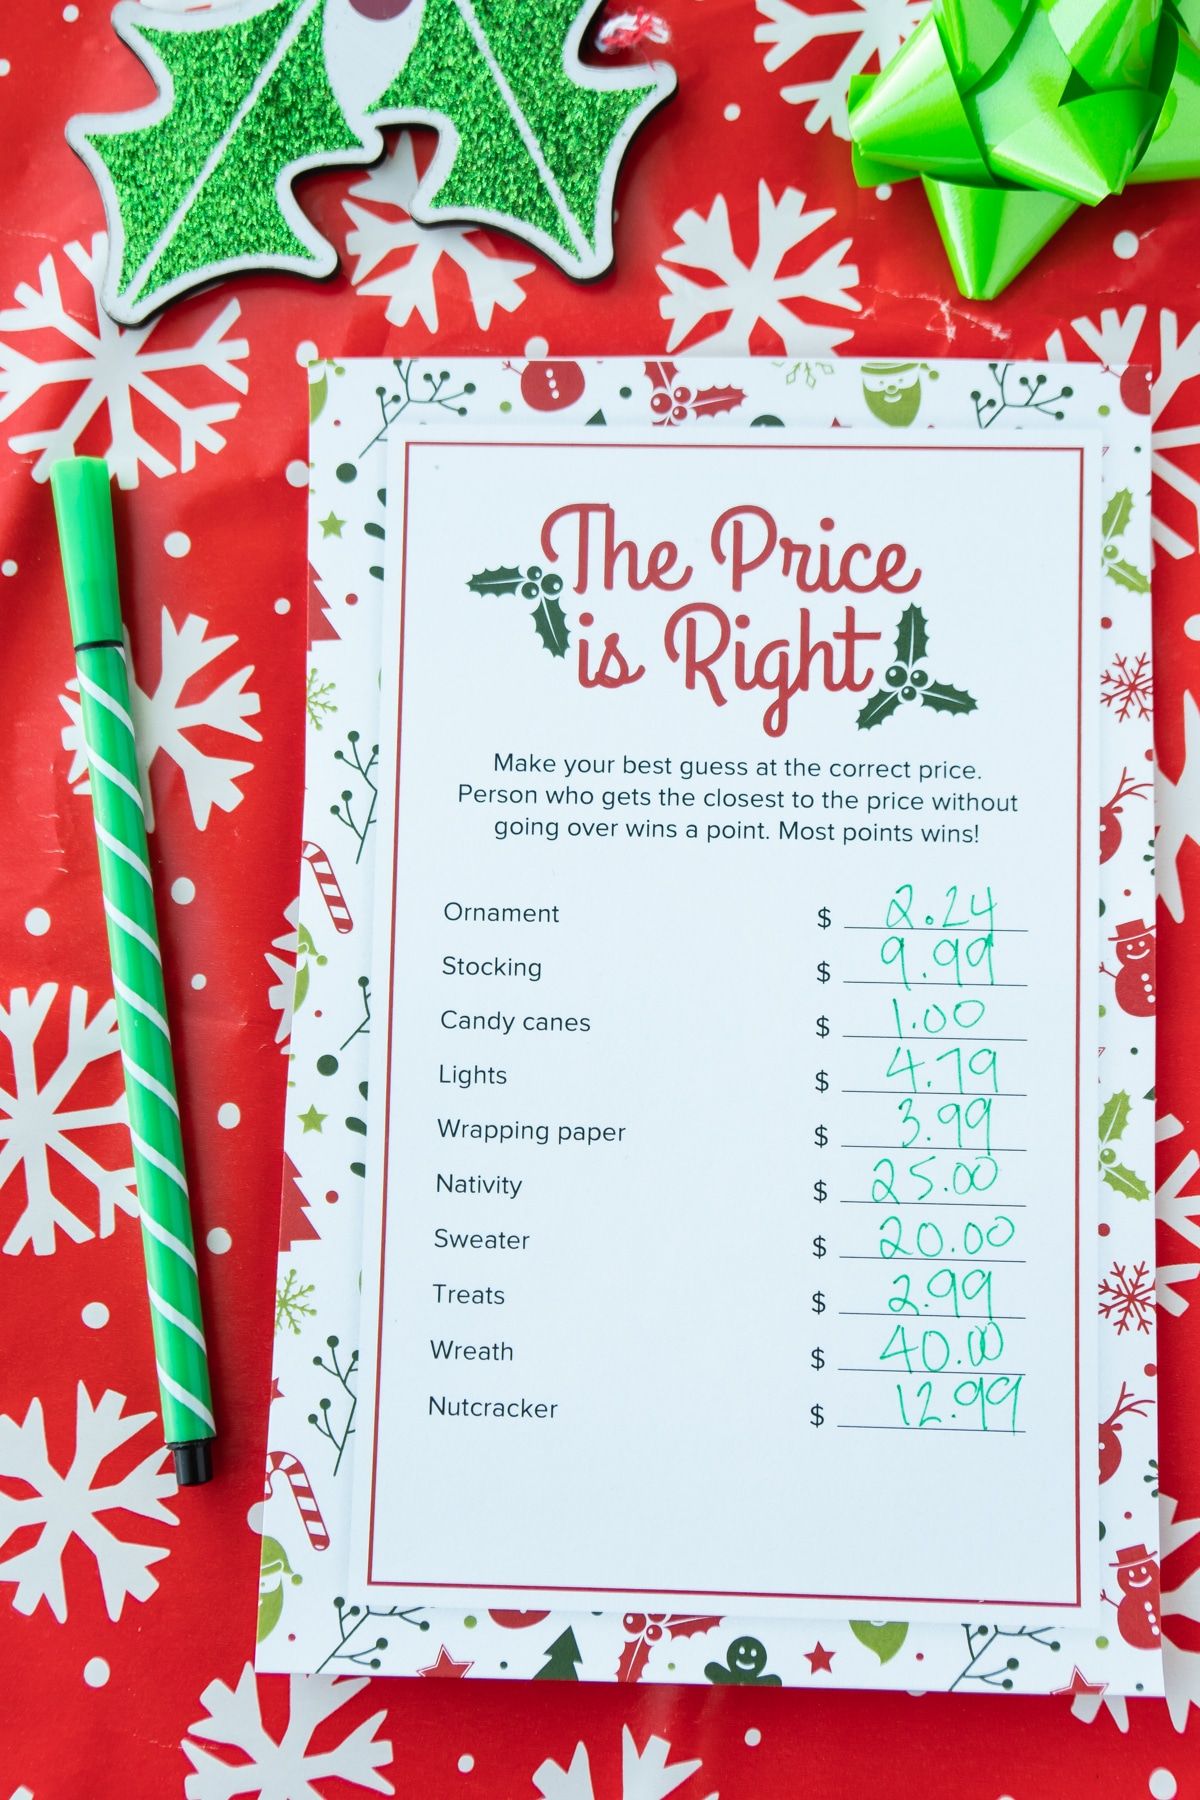 O preço do Natal é o jogo certo com os preços anotados